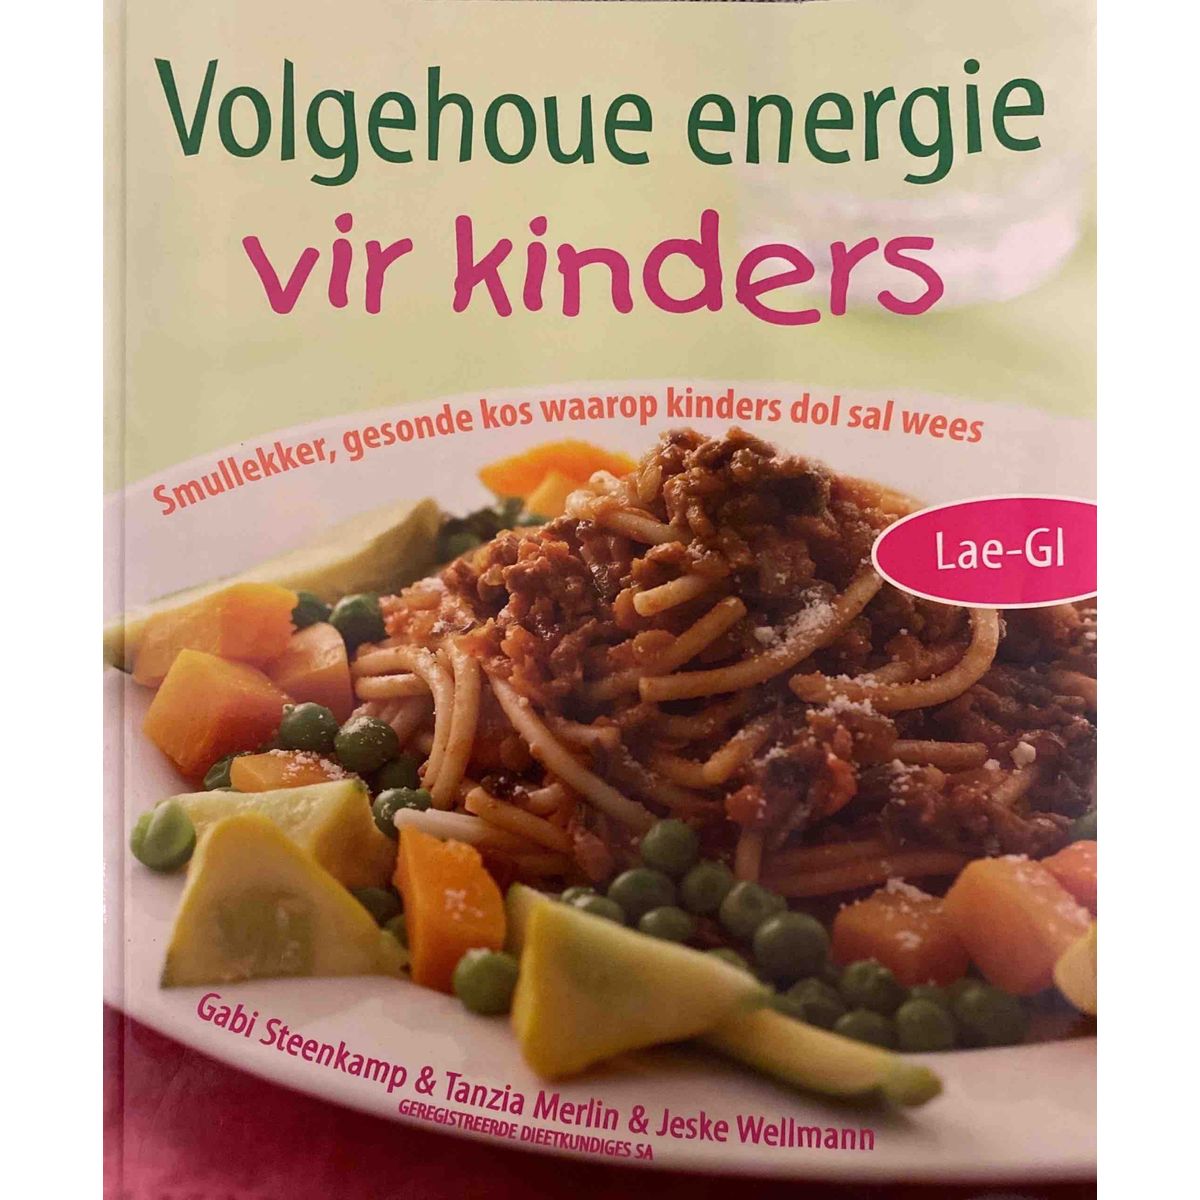 ISBN: 9780624043607 / 0624043606 - Volgehoue Energie vir Kinders by Gabi Steenkamp, Tanzia Merlin & Jeske Wellmann [2006]